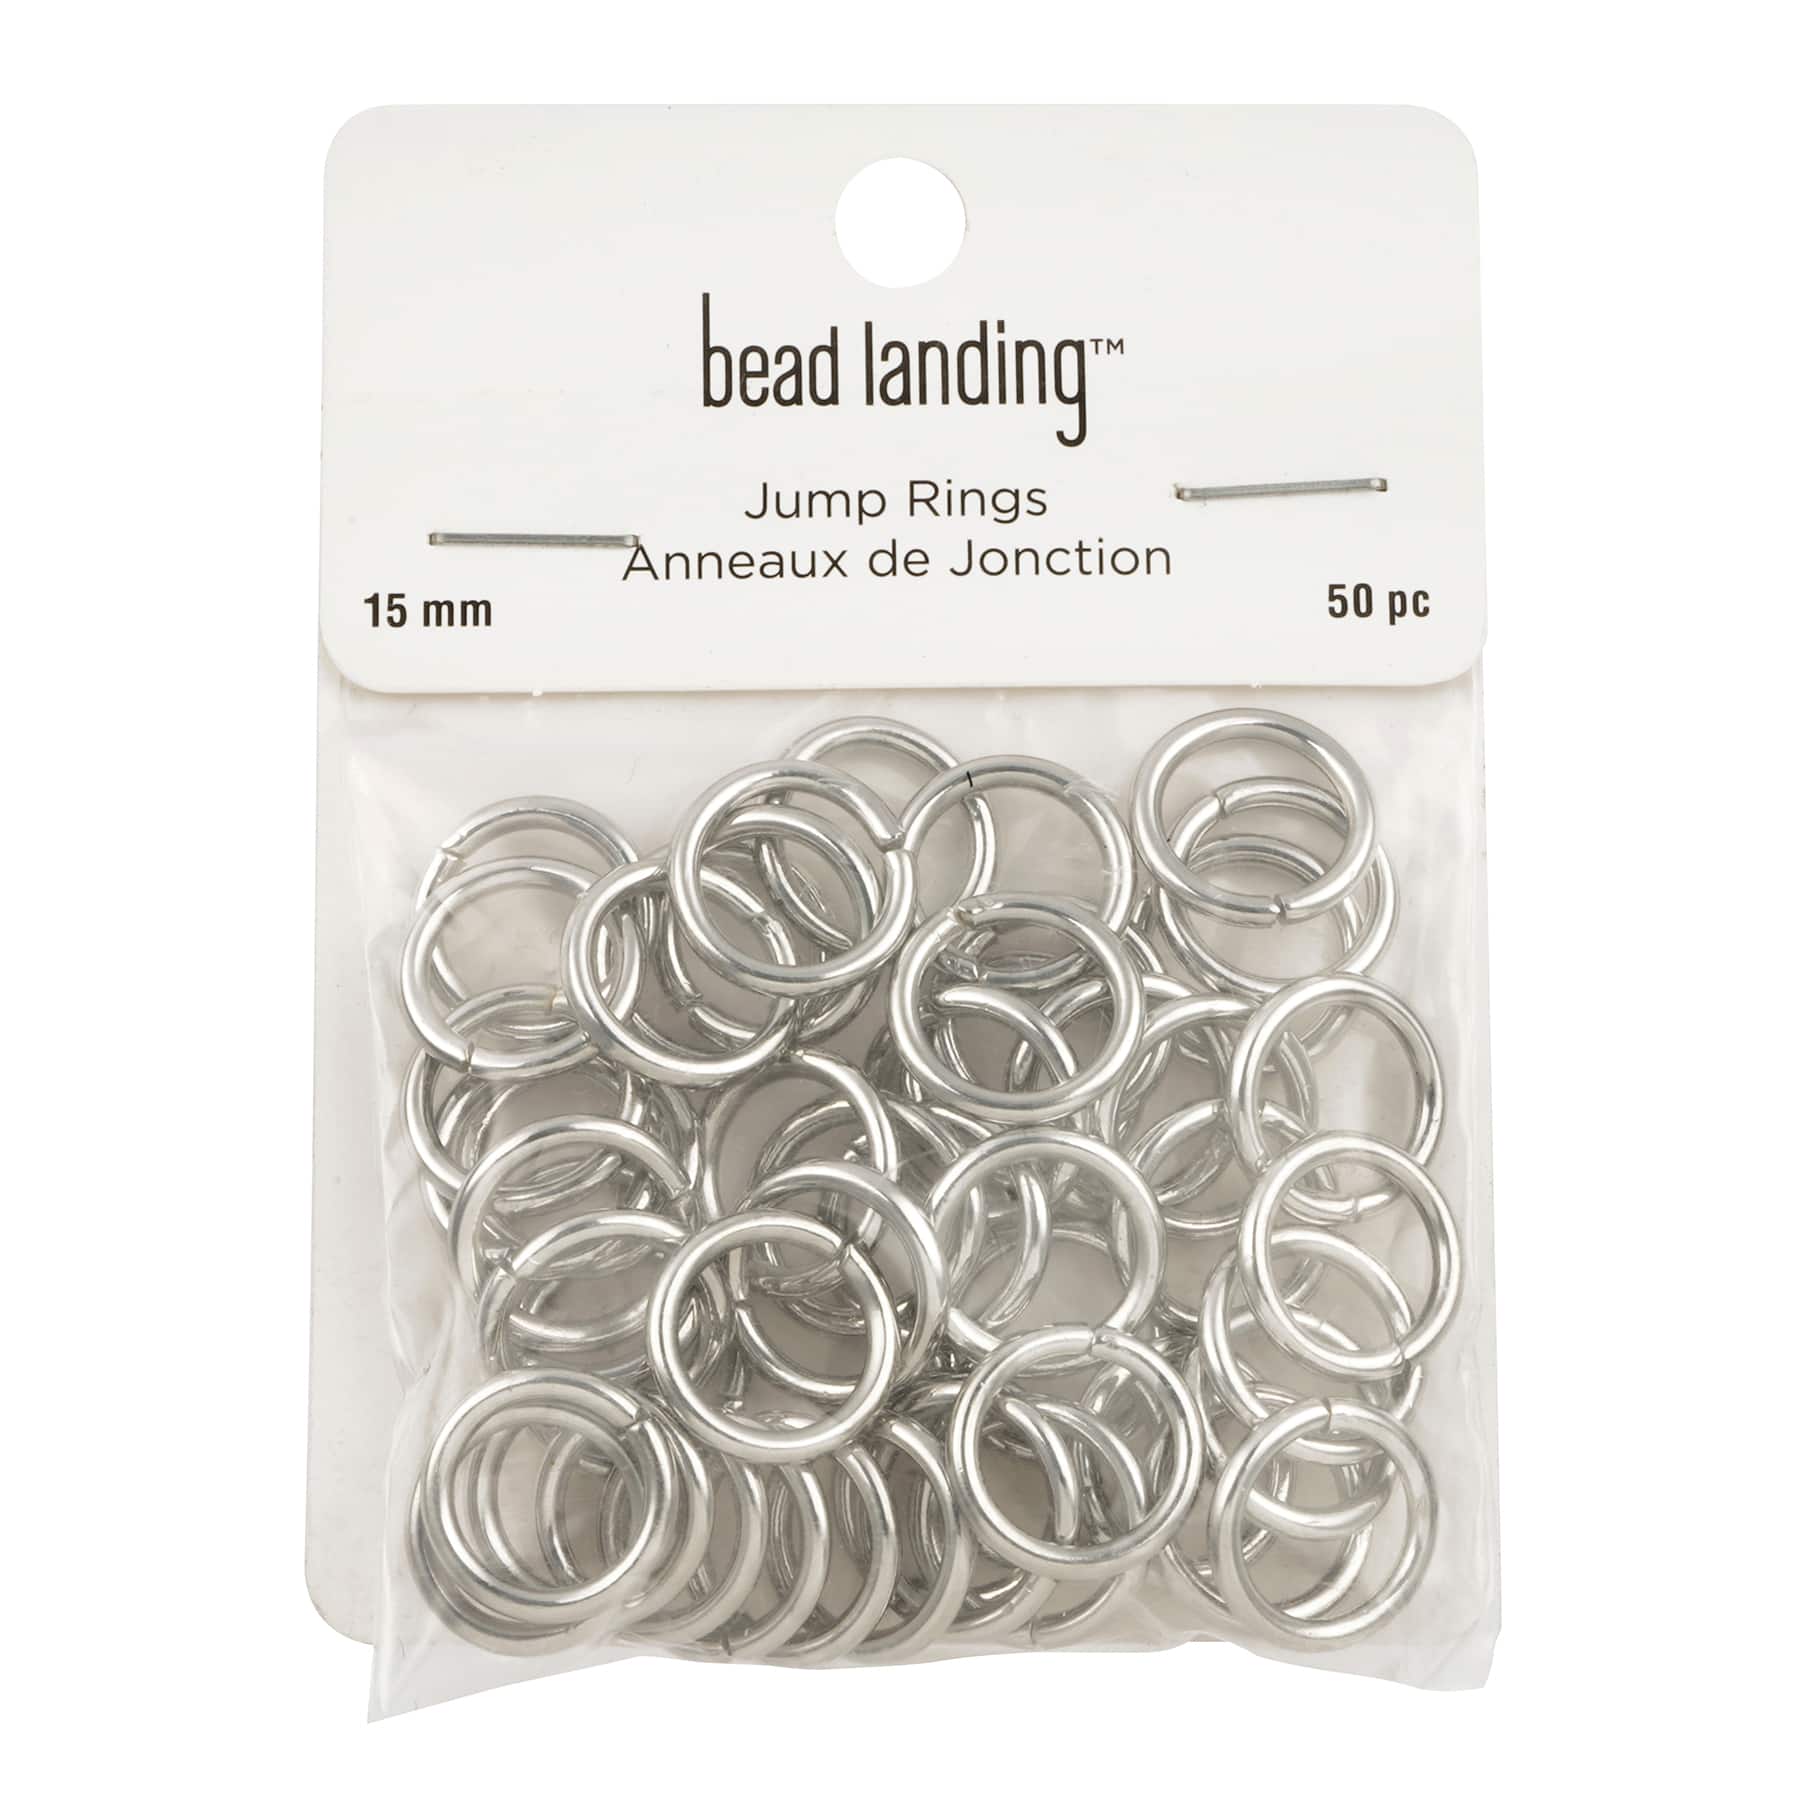 12mm Split Rings by Bead Landing™